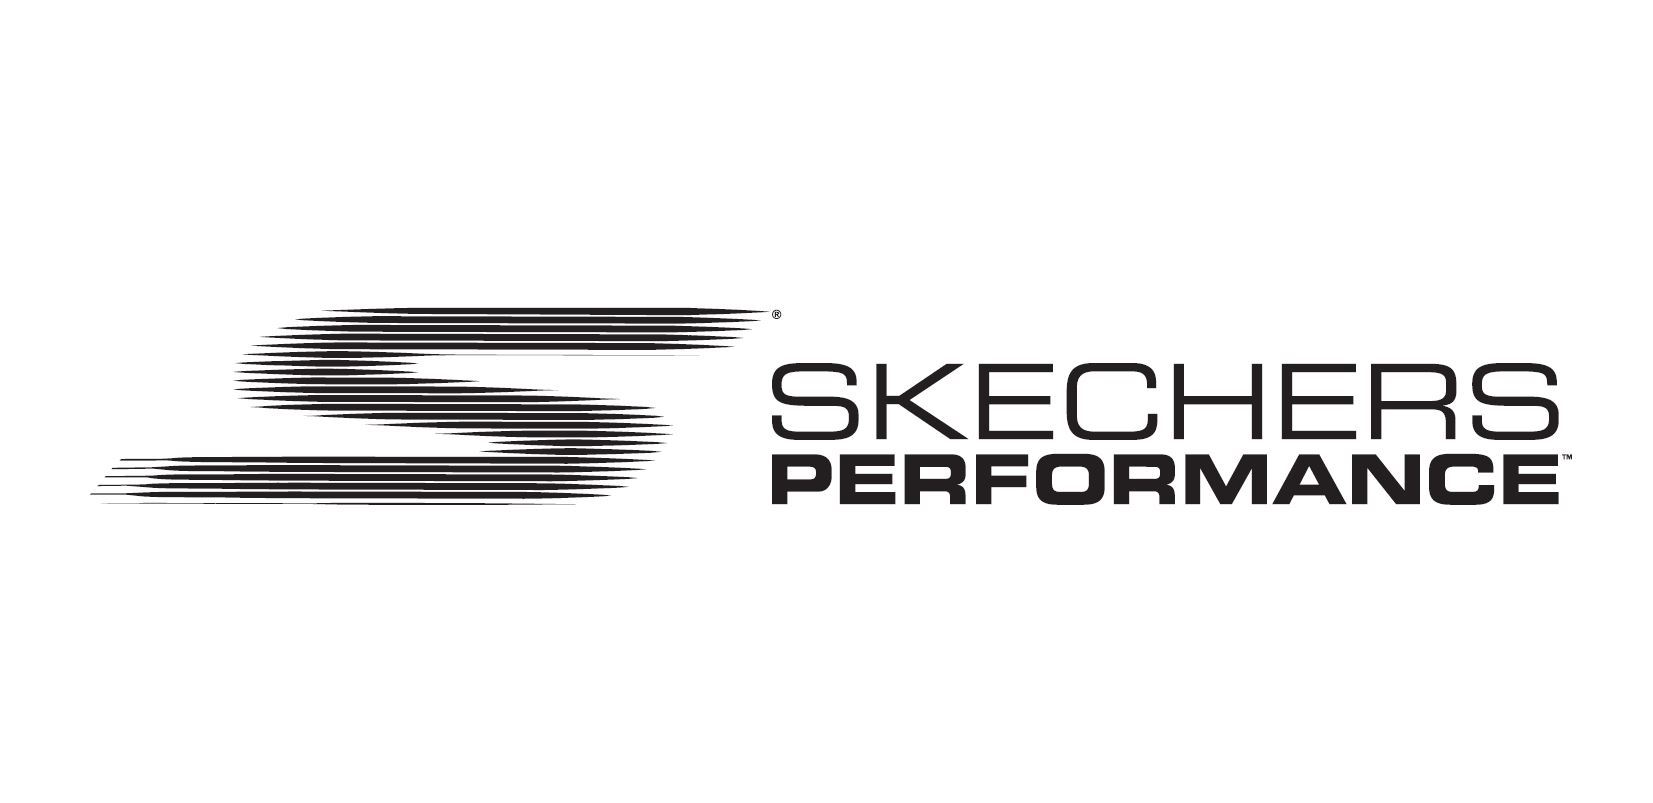 skechers go run logo